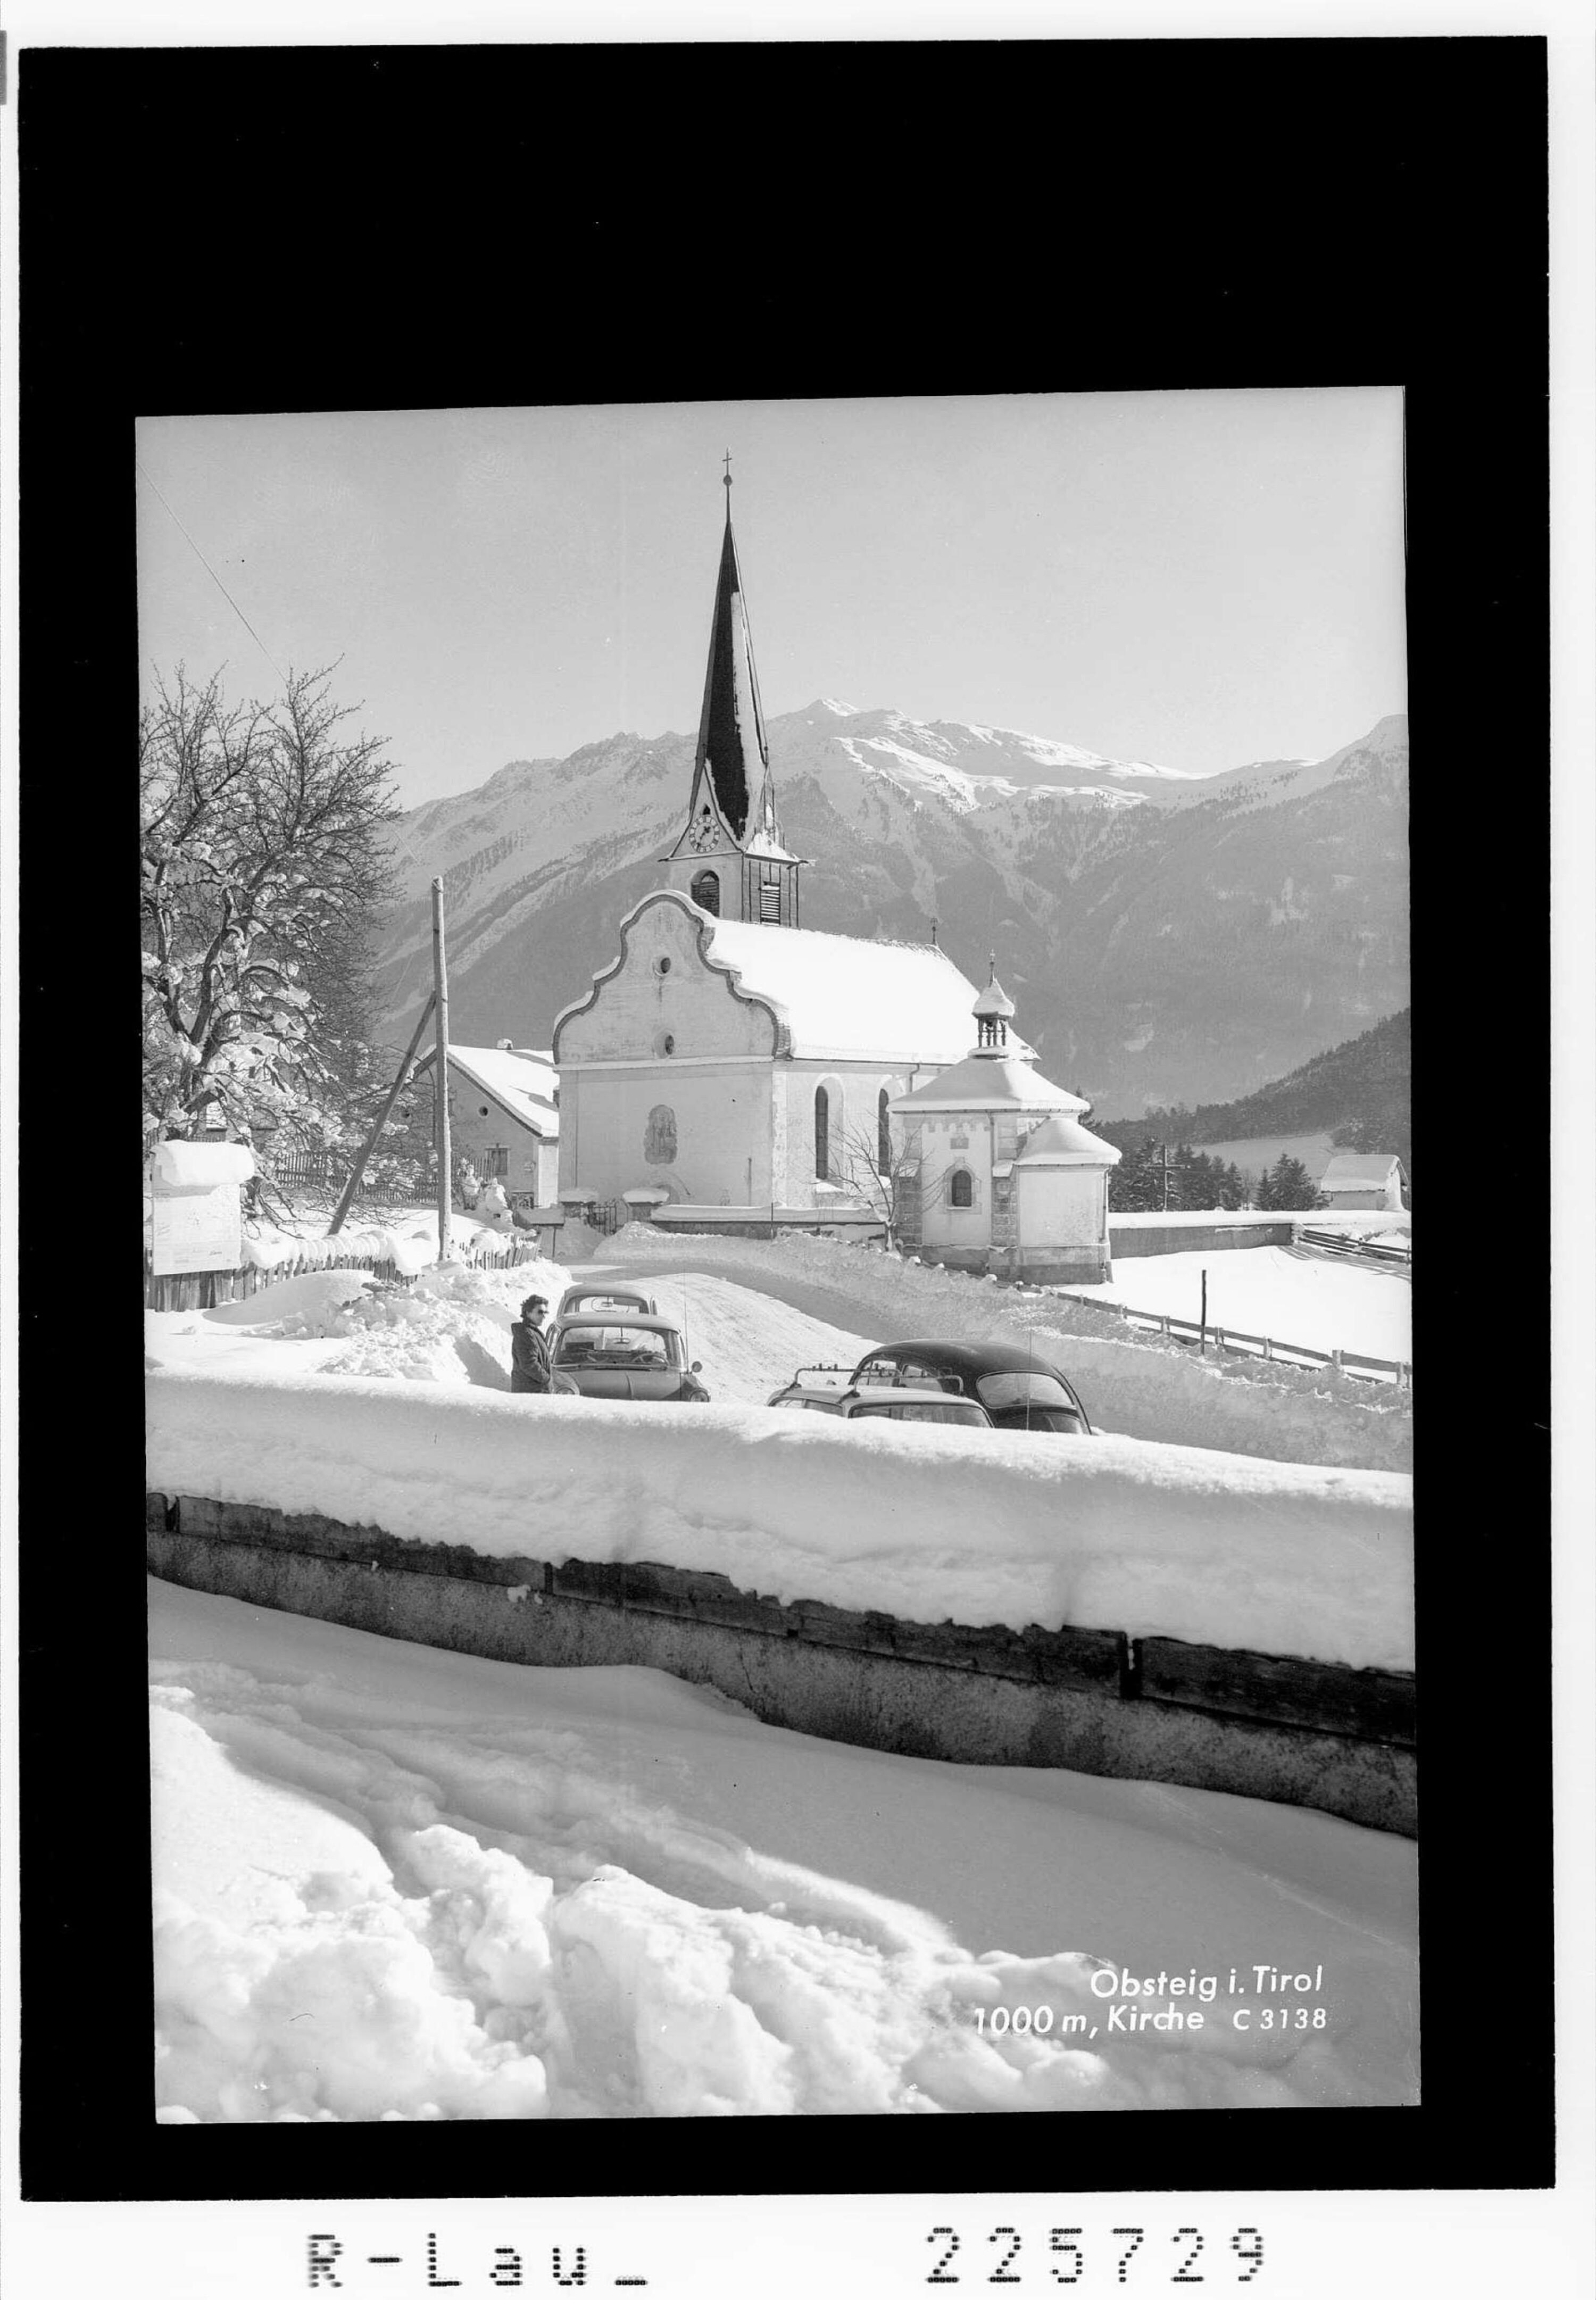 Obsteig in Tirol 1000 m / Kirche></div>


    <hr>
    <div class=